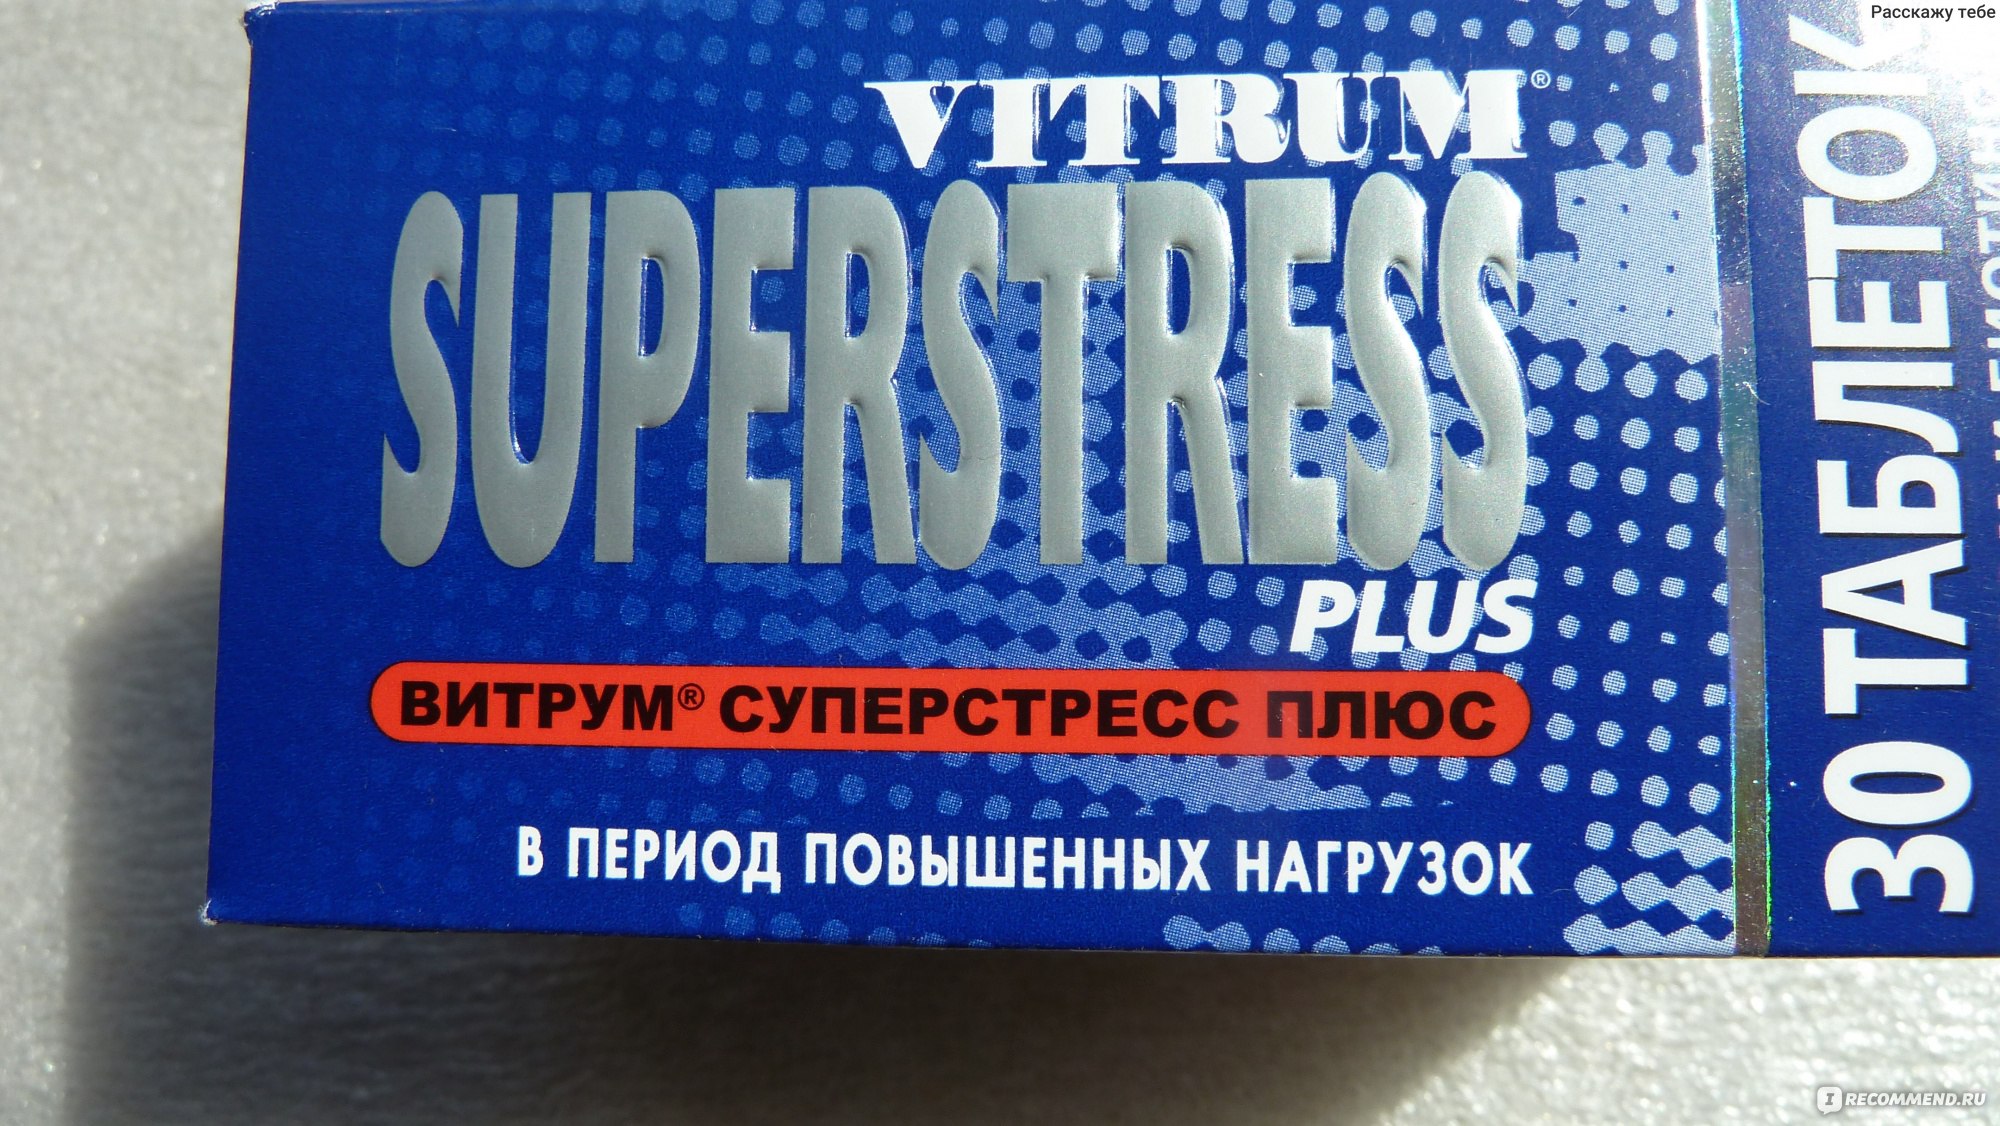 Витаминно-минеральный комплекс Unipharm Vitrum (Витрум) SUPERSTRESS .